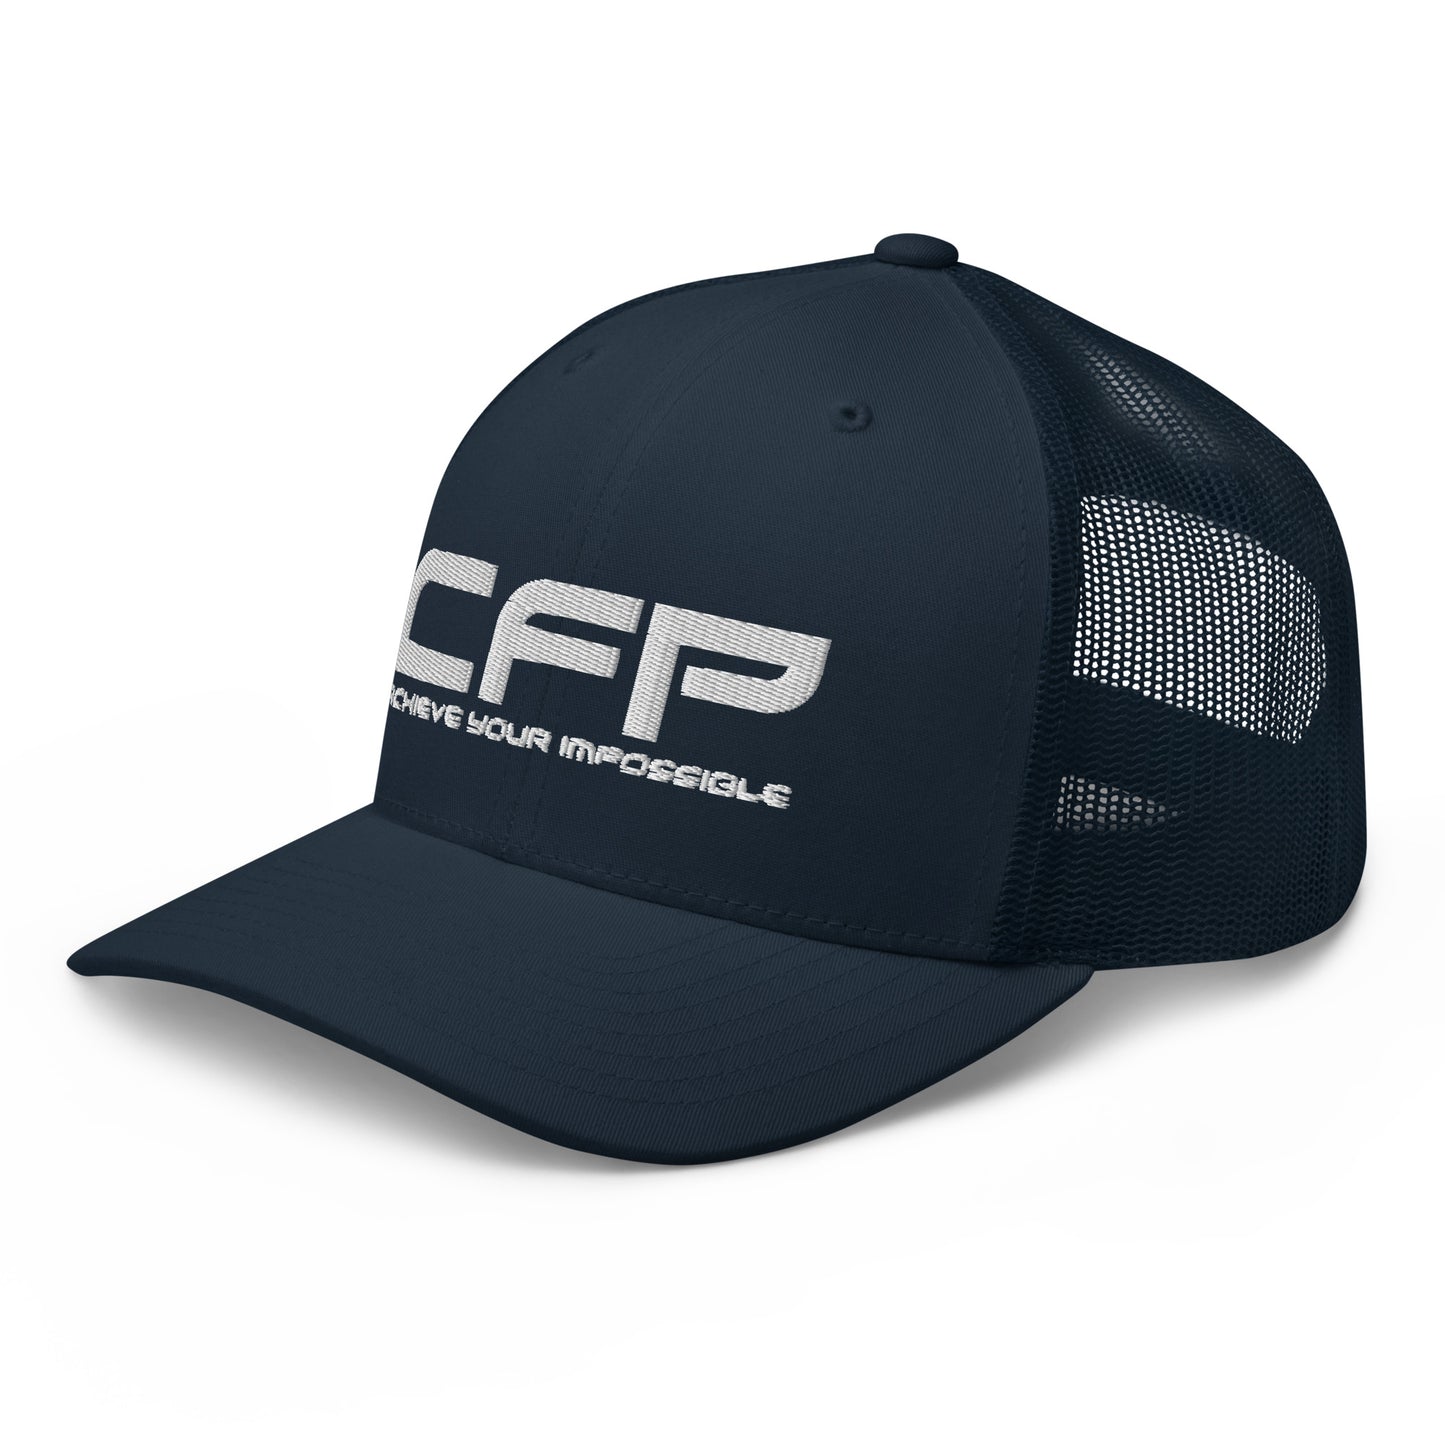 CFP Trucker Cap